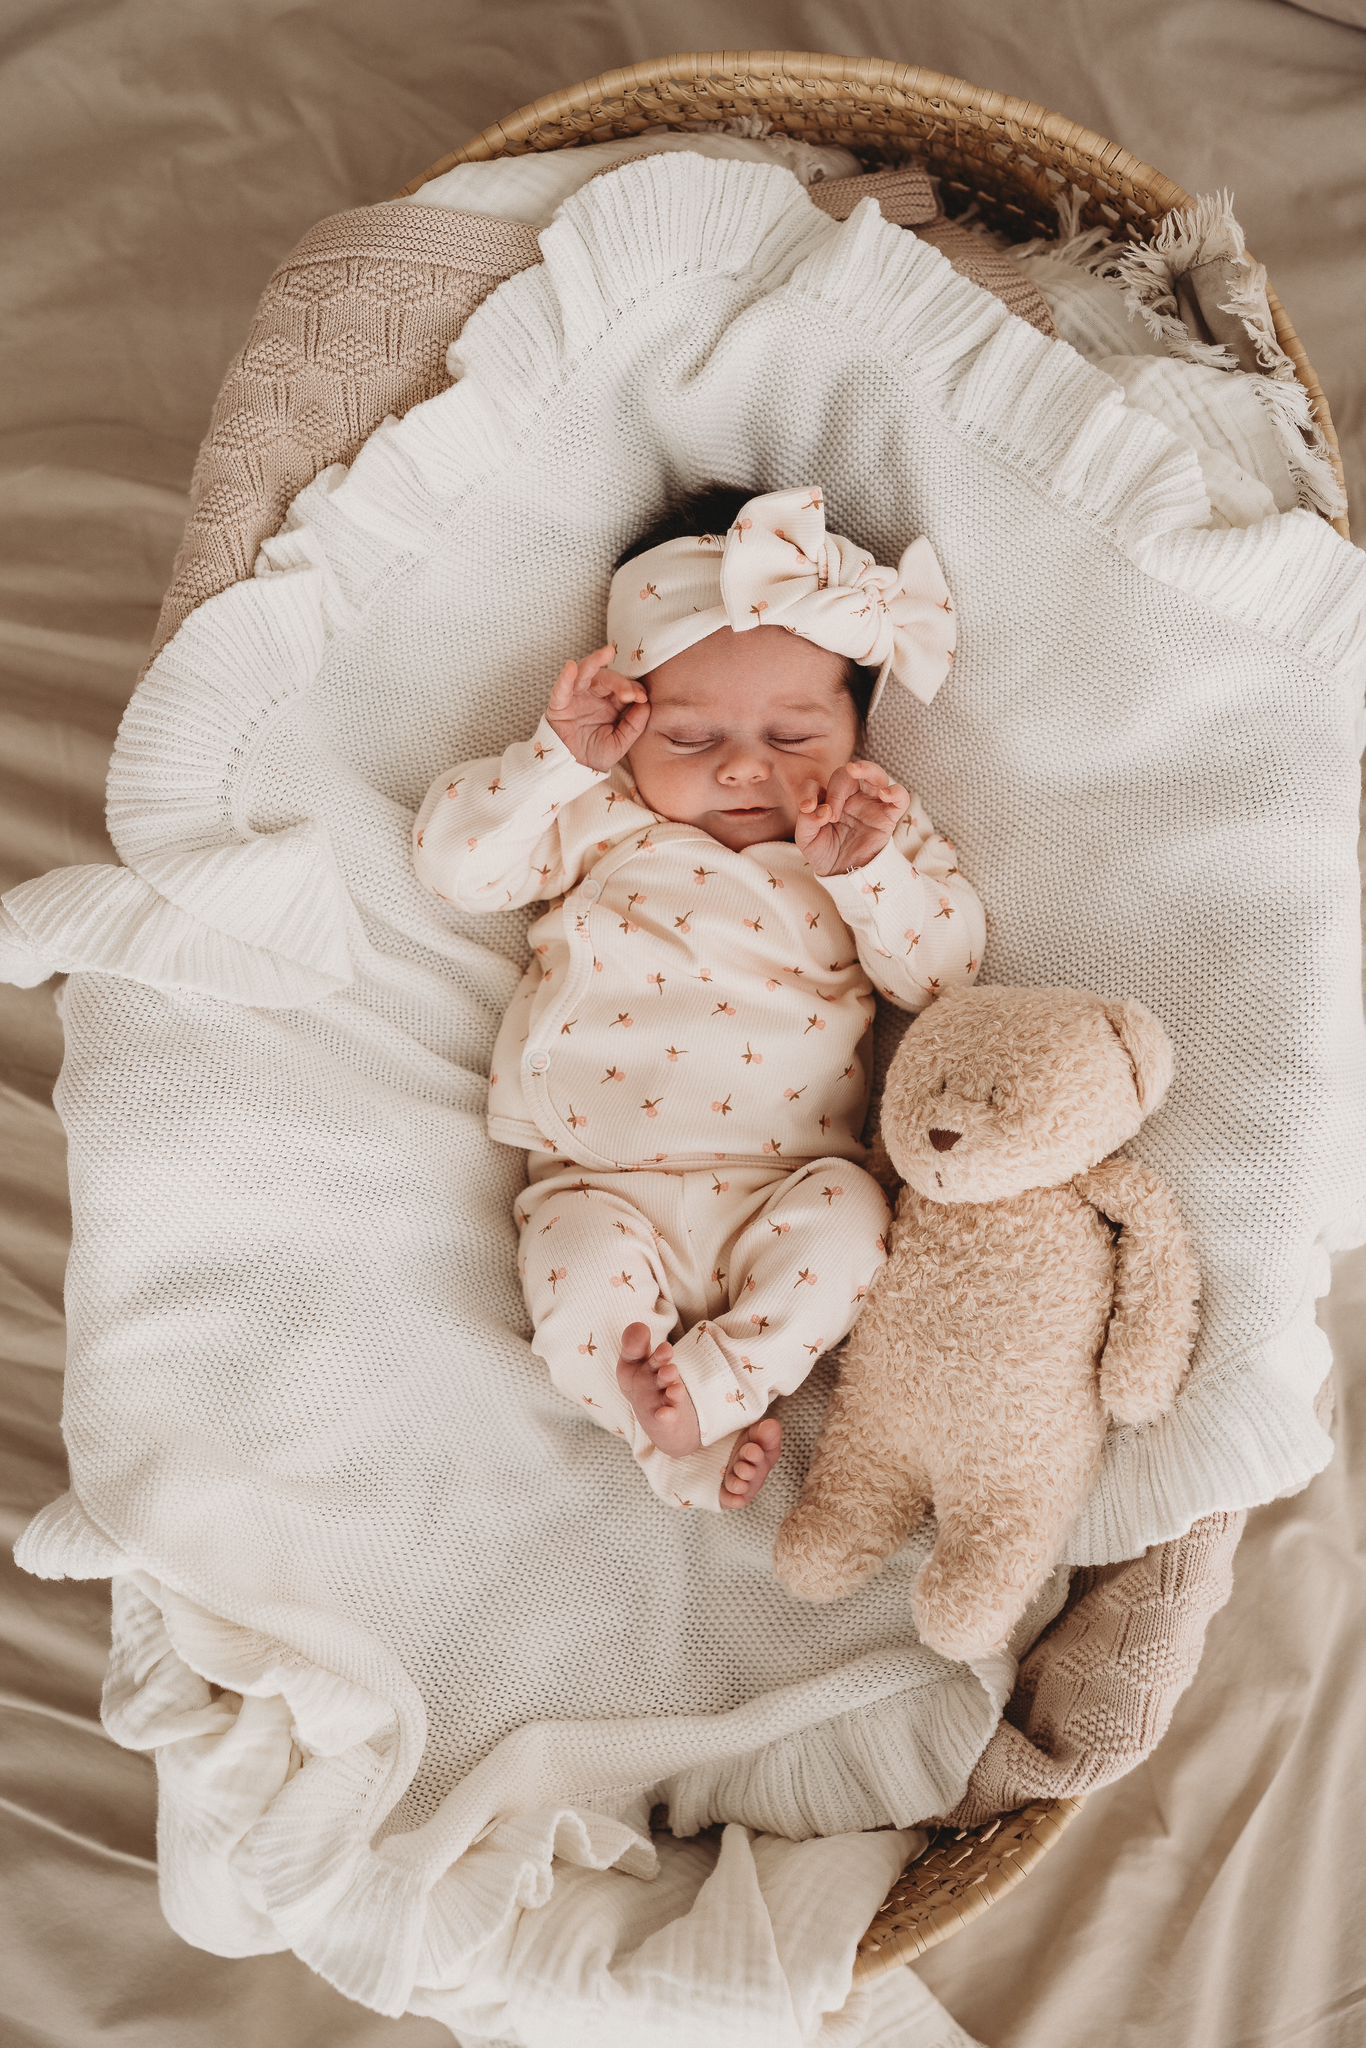 Een pasgeboren baby in een Broekje Tiny Tulip-outfit van Yumi Baby ligt op een crèmekleurige deken, geeuwend of huilend met kleine vuistjes bij het gezicht, en legt een kostbaar moment uit het vroege leven vast.